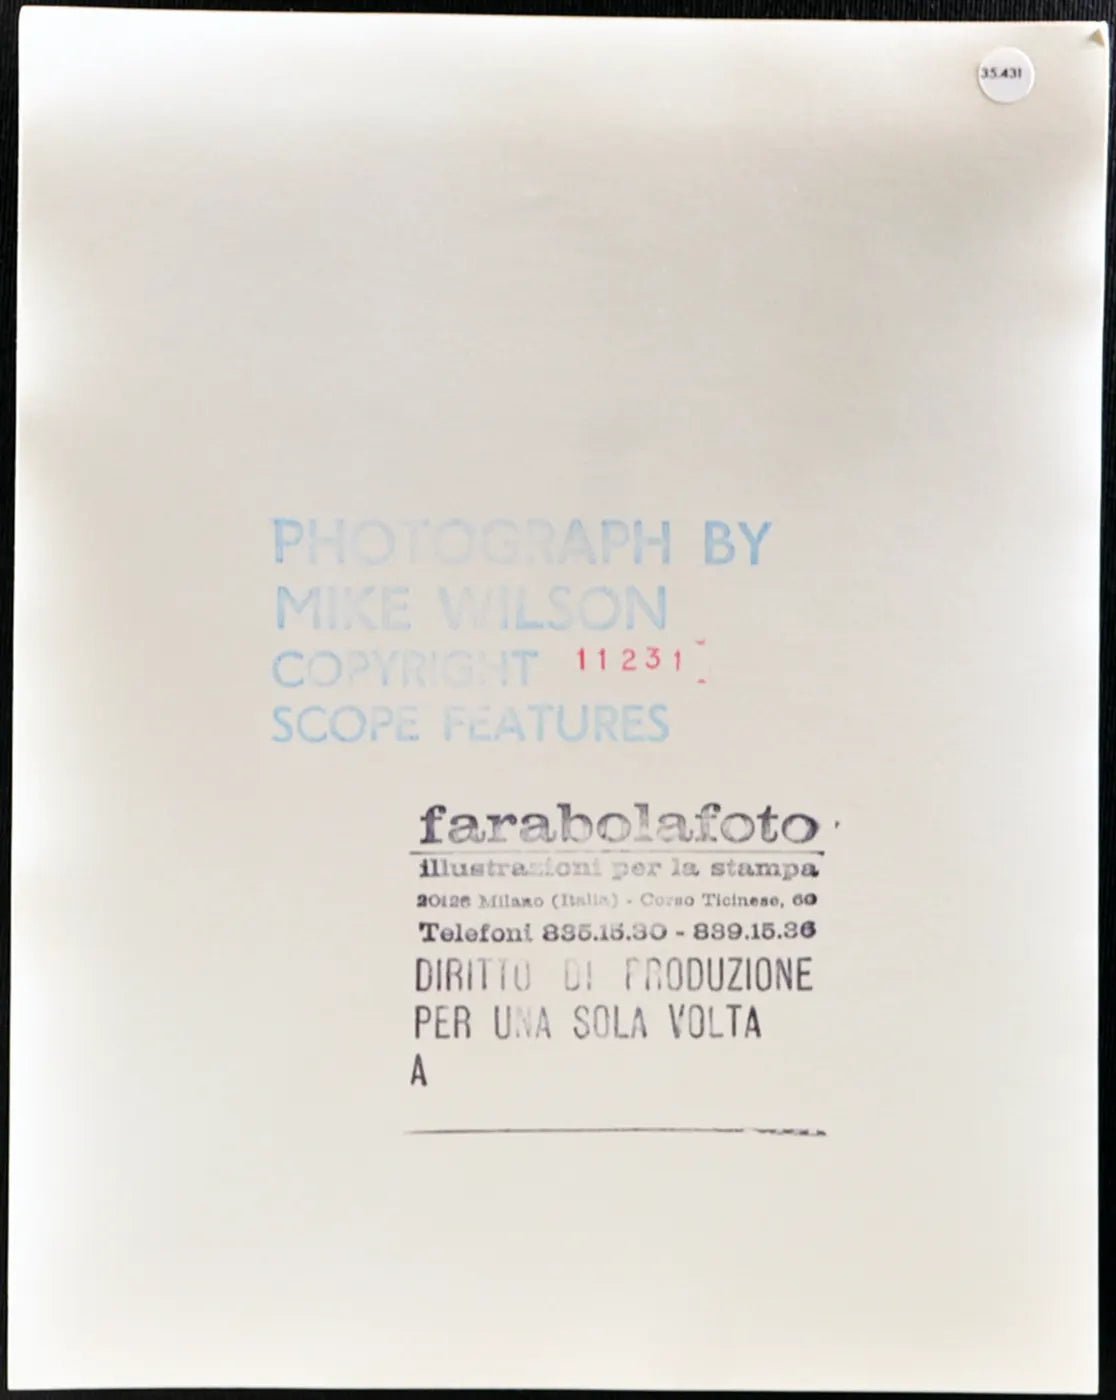 Nikki Debuss Modella anni 80 Ft 35431 - Stampa 20x25 cm - Farabola Stampa ai sali d'argento